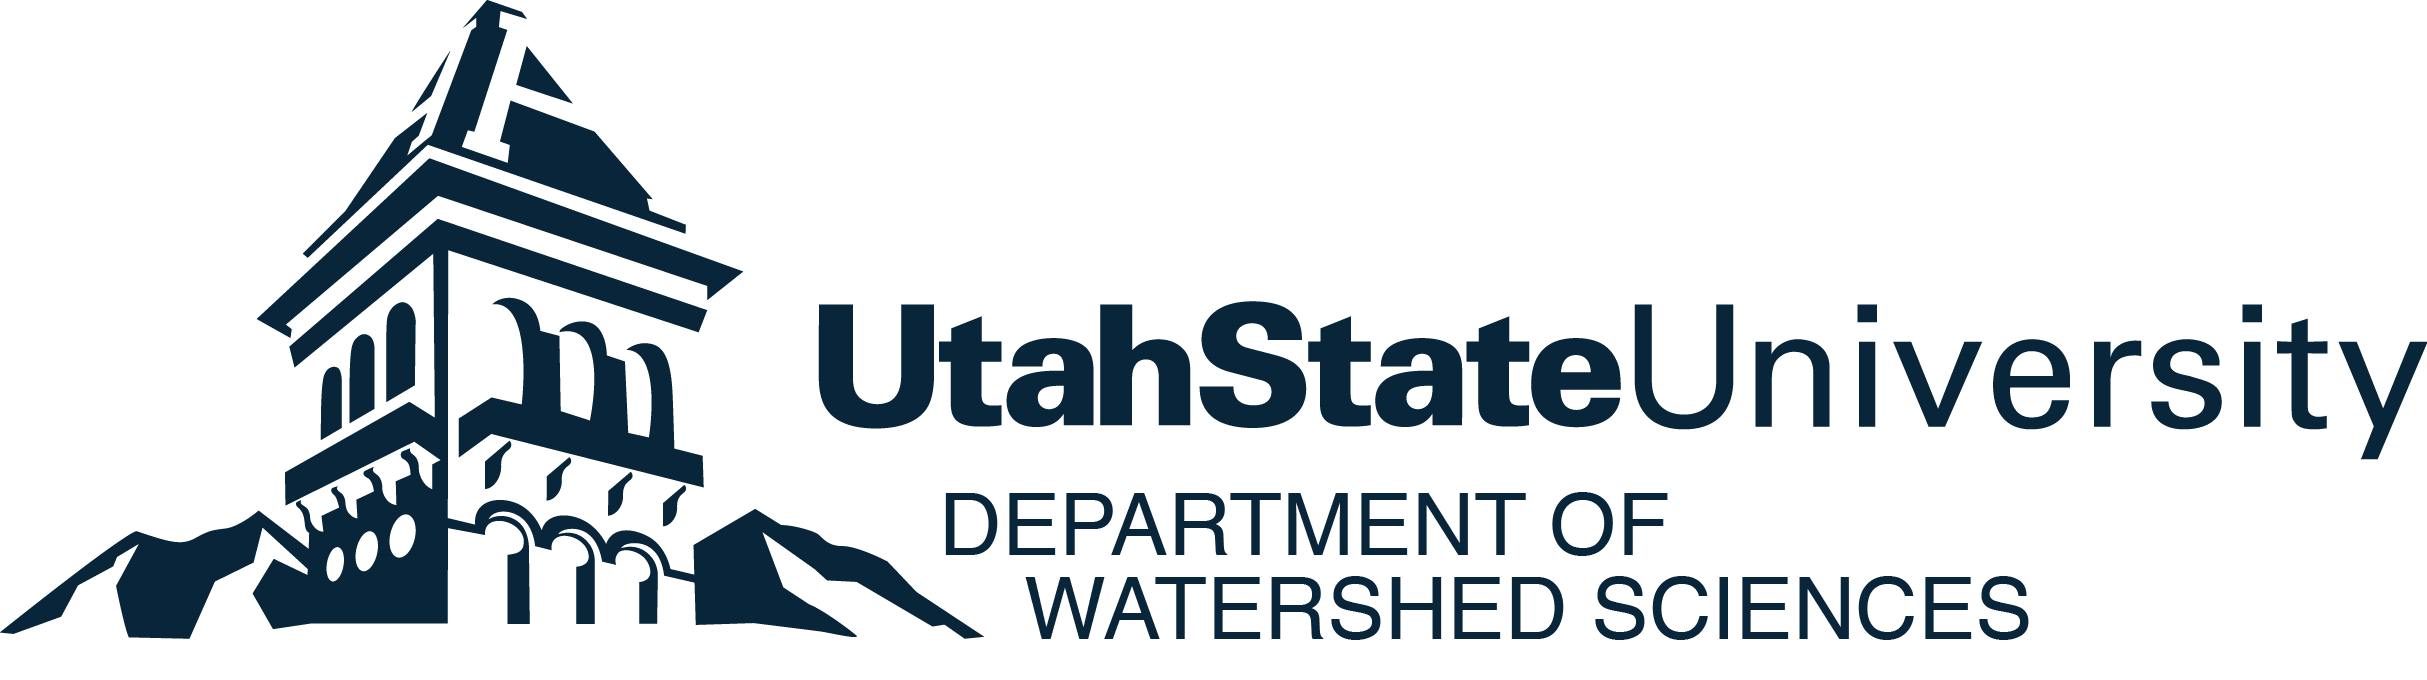 USU Logo - Jennifer Weathered